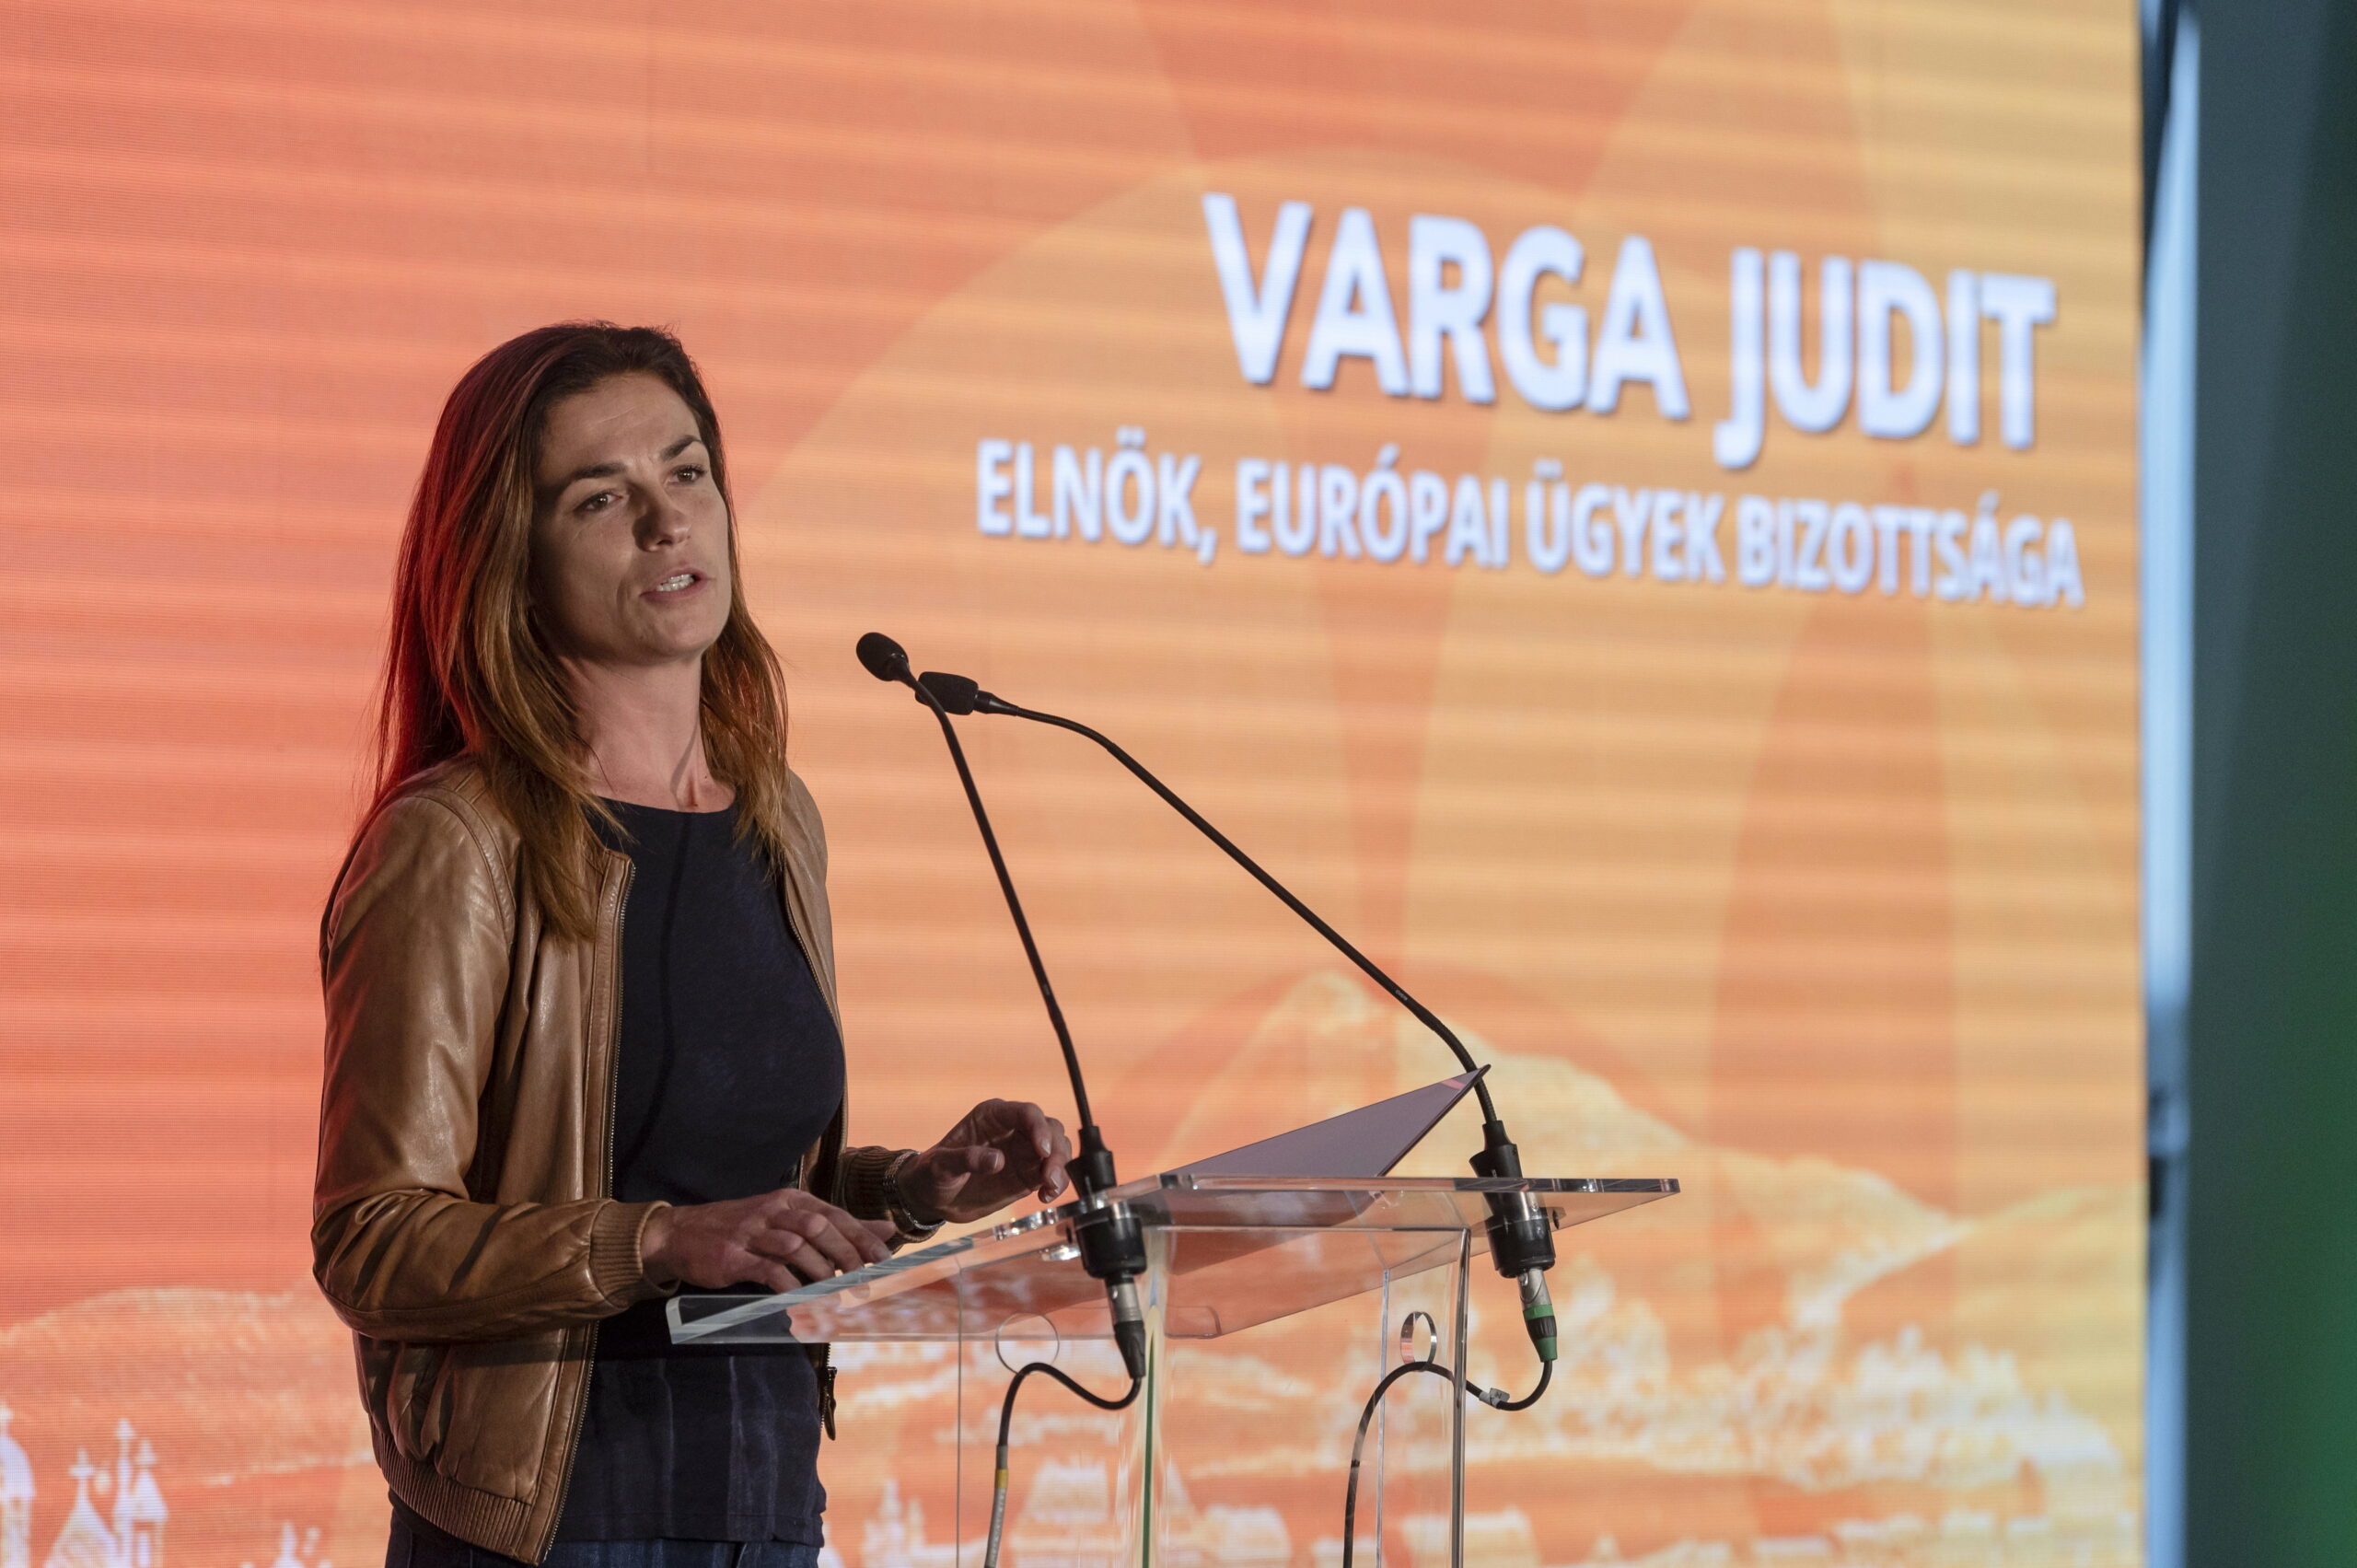 Varga Judit is érintett a pedofil igazgató bűntársát felmentő botrányban – állítja Ungár Péter